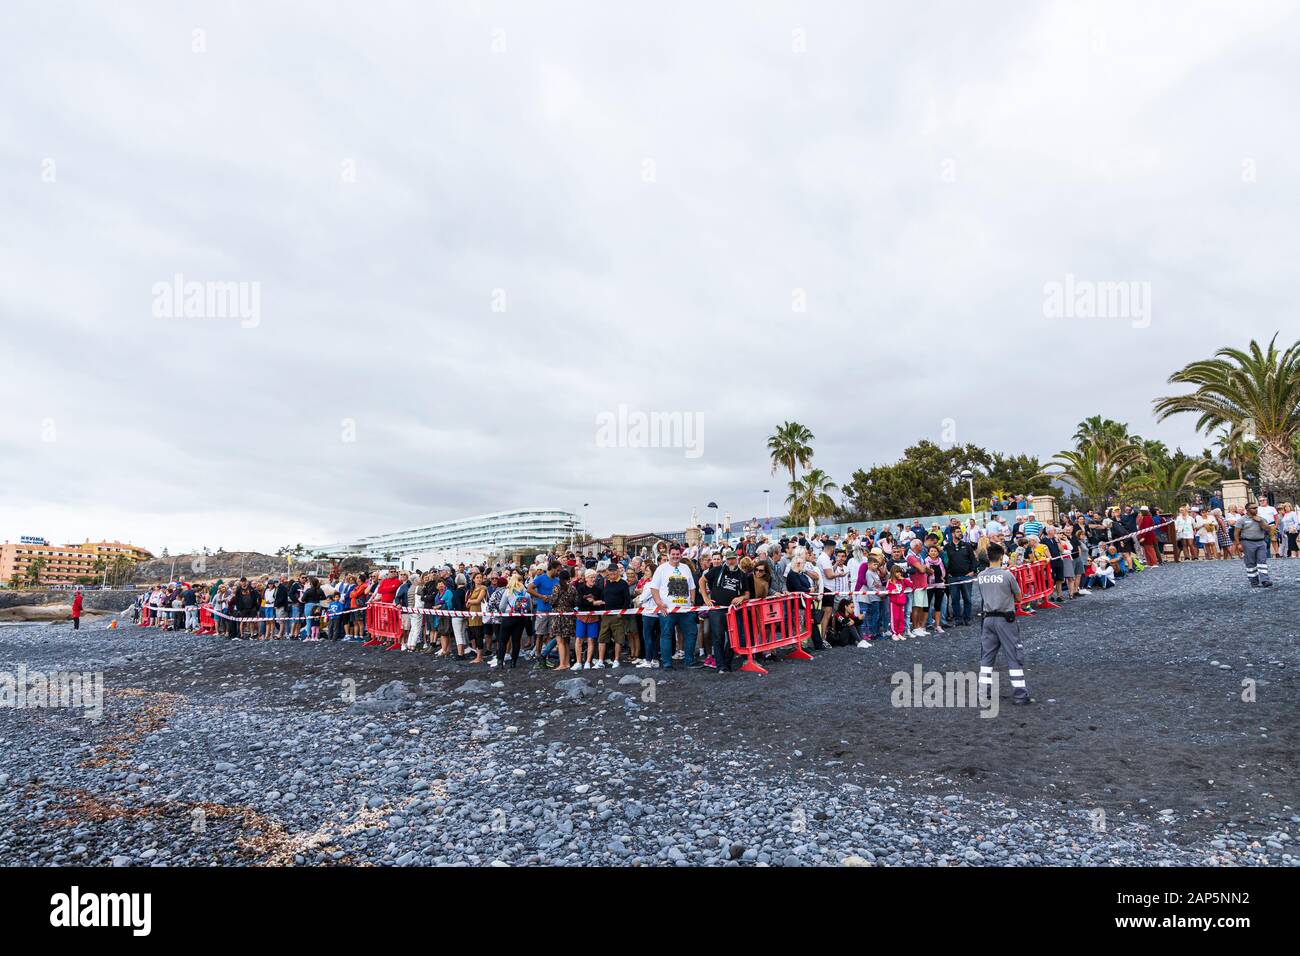 Des foules de gens attendent l'arrivée des chevaux sur la plage de la Fiesta de San Sebastian à La Caleta, Costa Adeje, Tenerife, Canaries. Banque D'Images